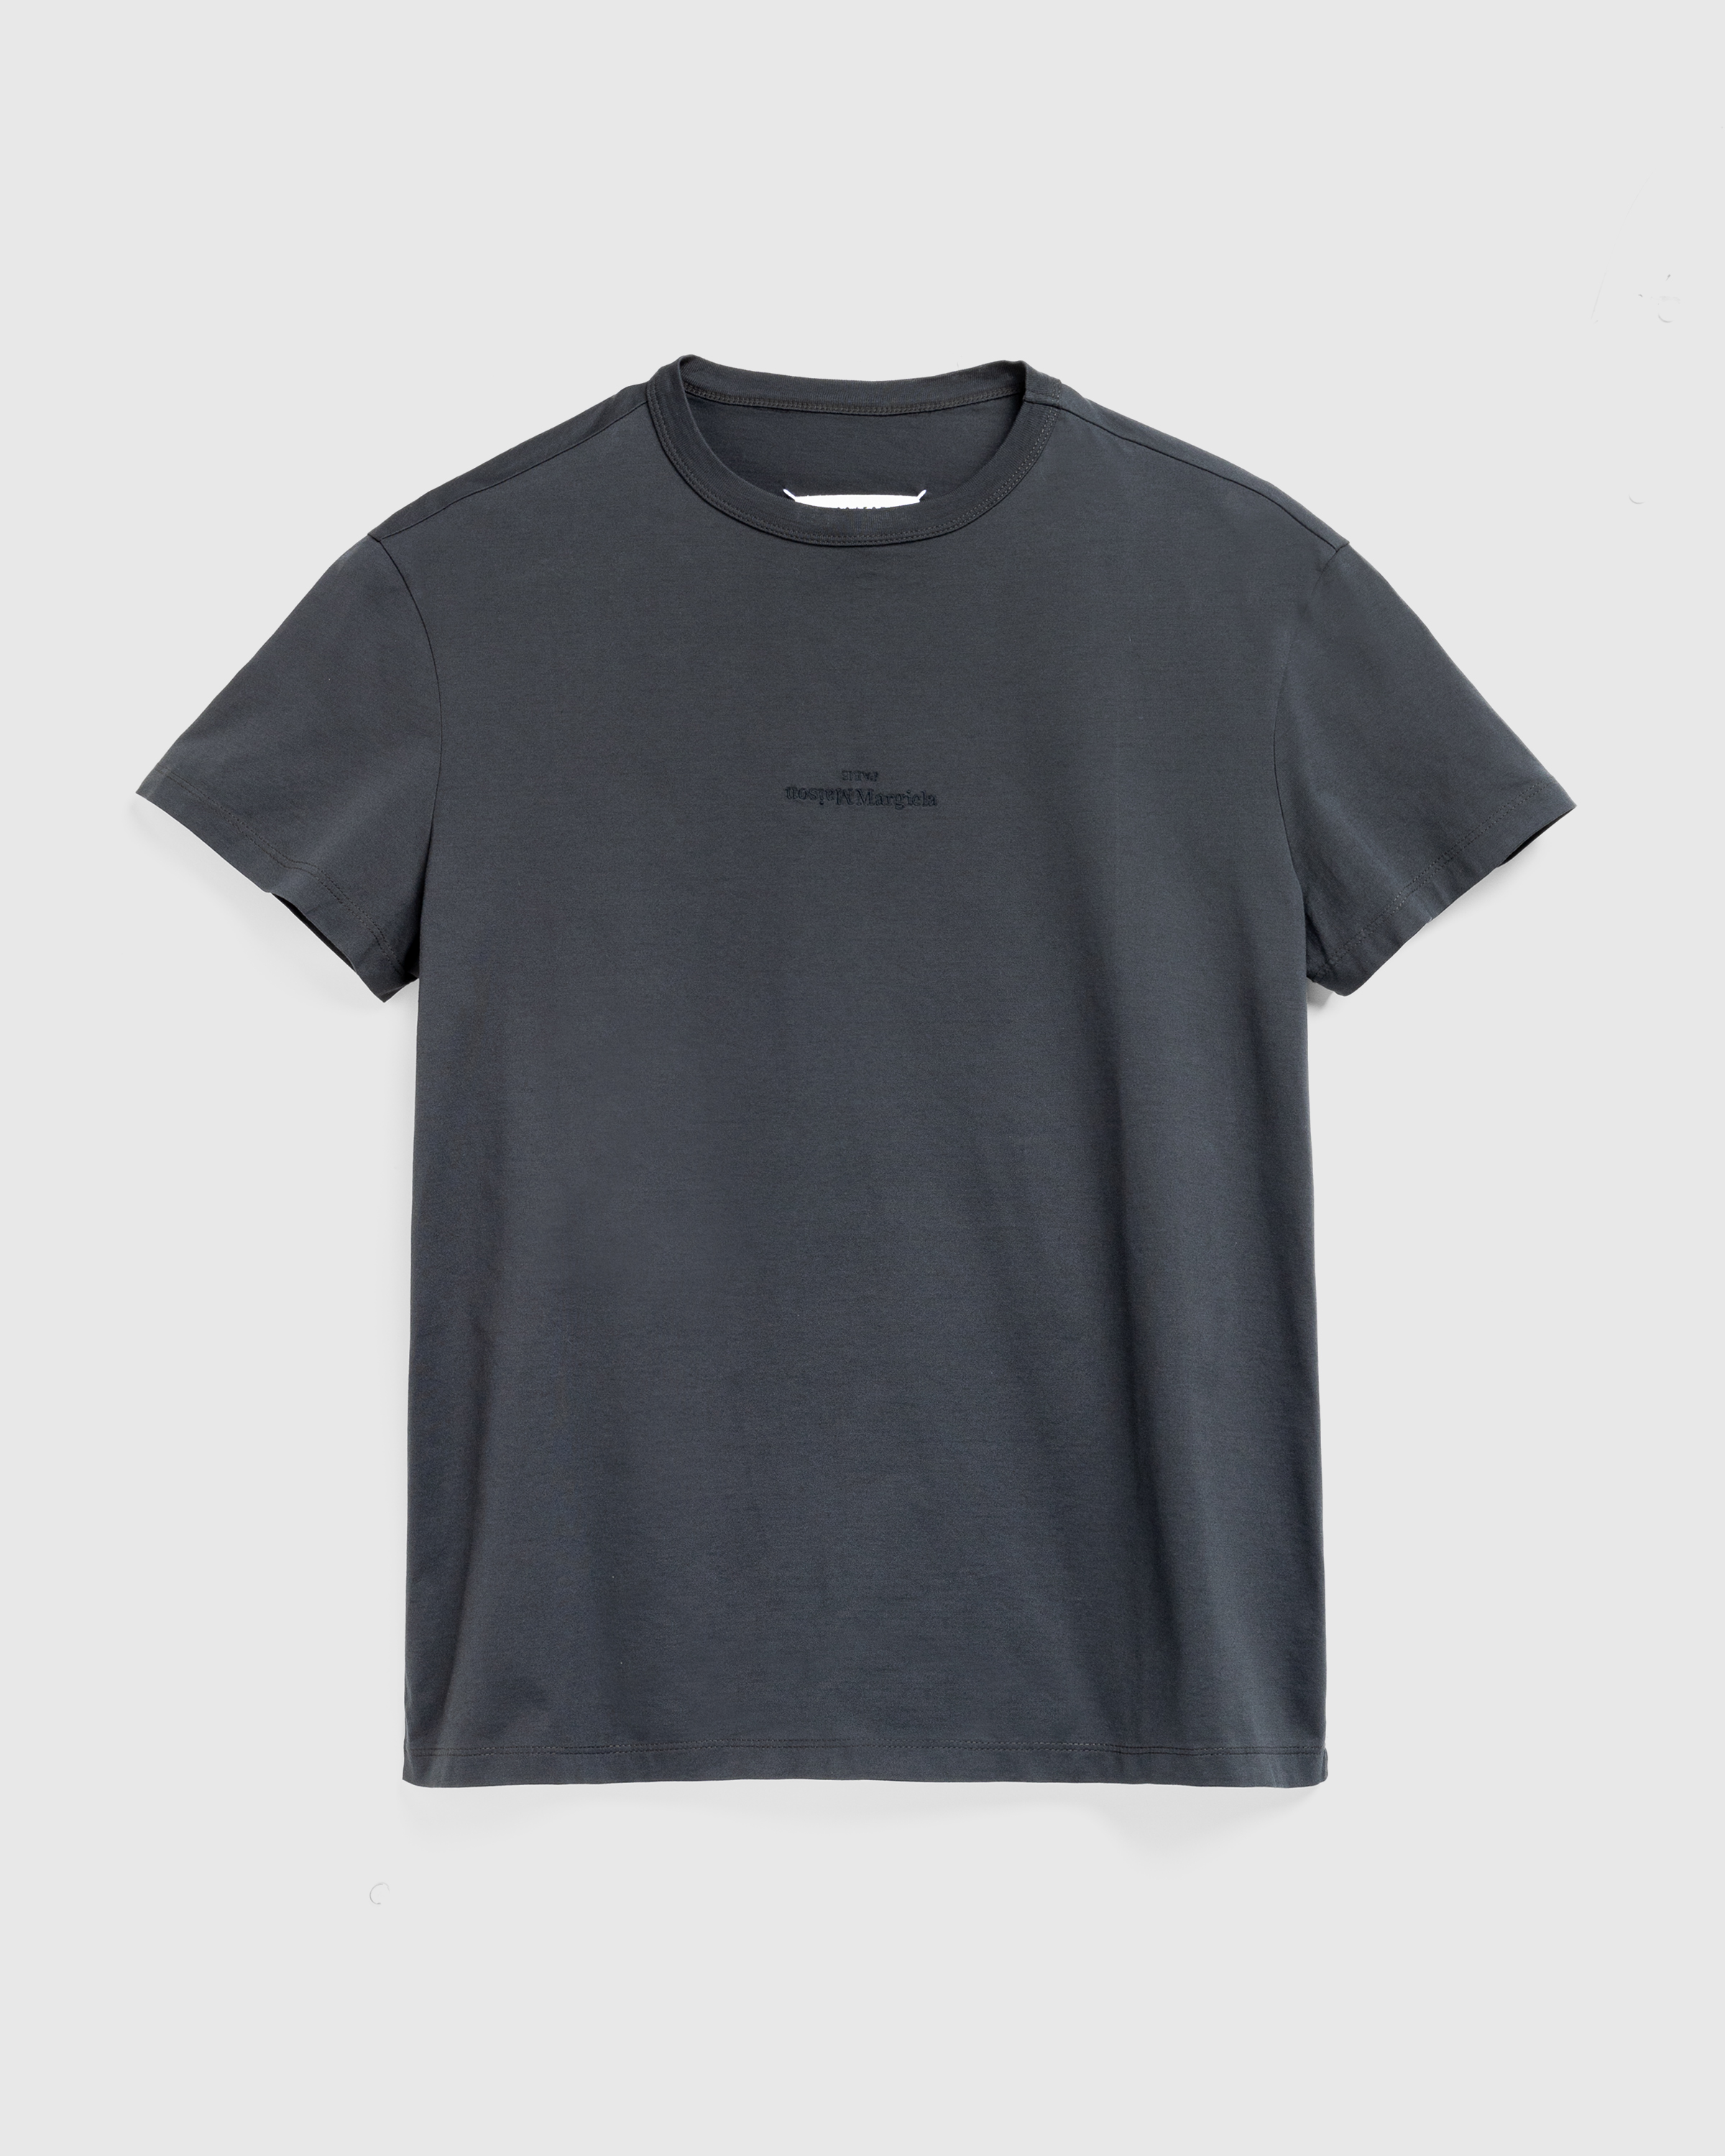 Maison Margiela – Distorted Logo T-Shirt Washed Black - Tops - Black - Image 1